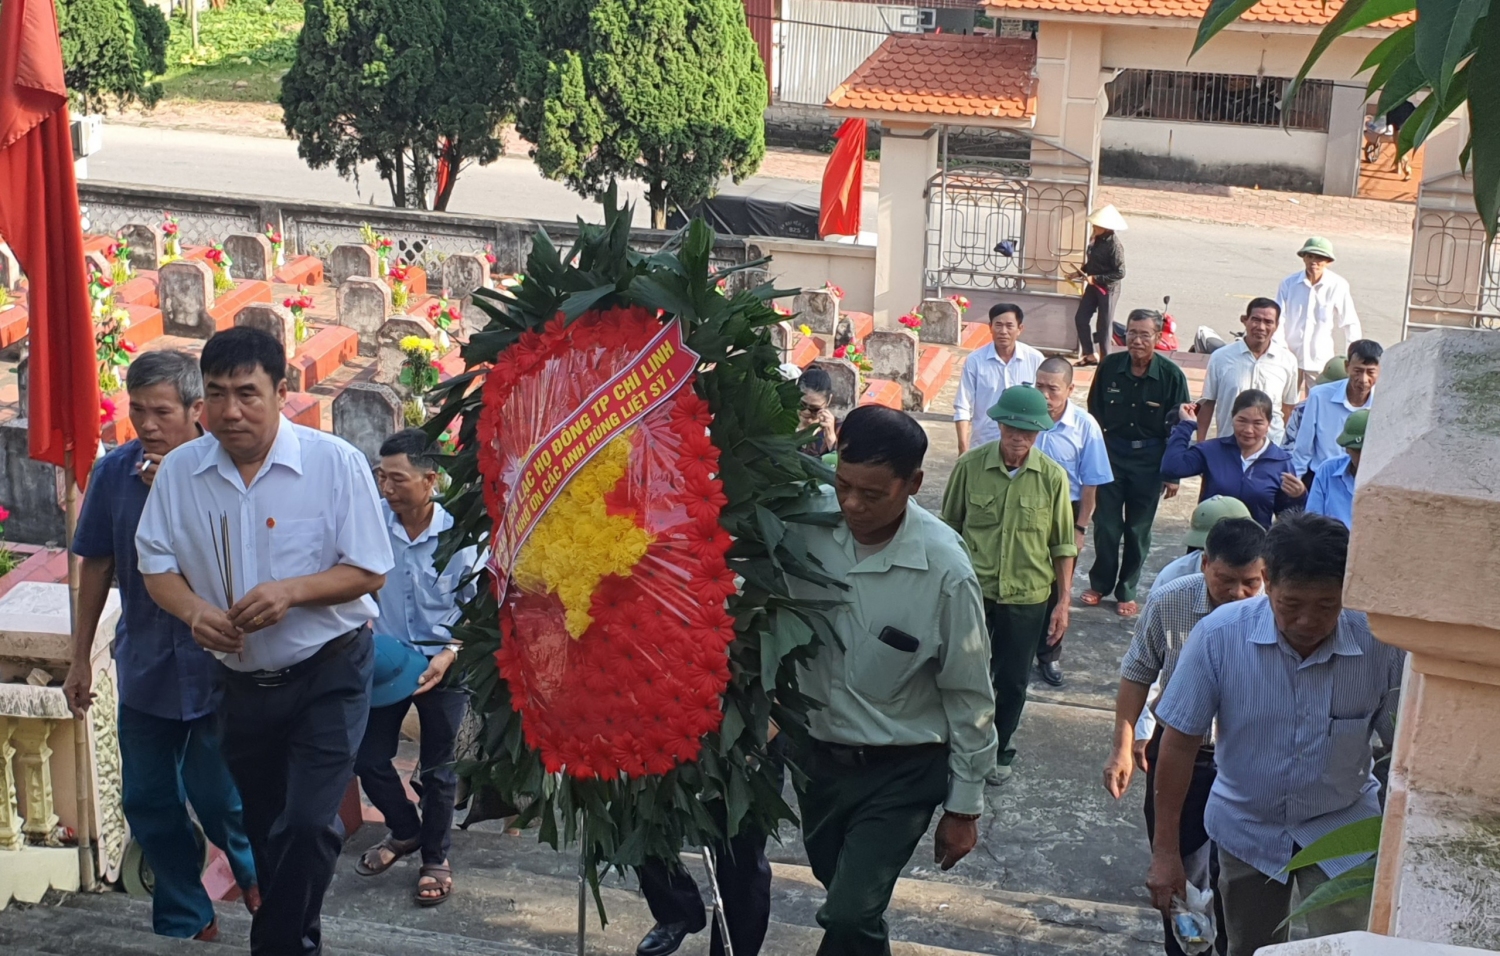 BLL Họ Đồng TP. Chí Linh tặng quà tri ân các gia đình chính sách nhân kỷ niệm 76 năm Ngày TBLS